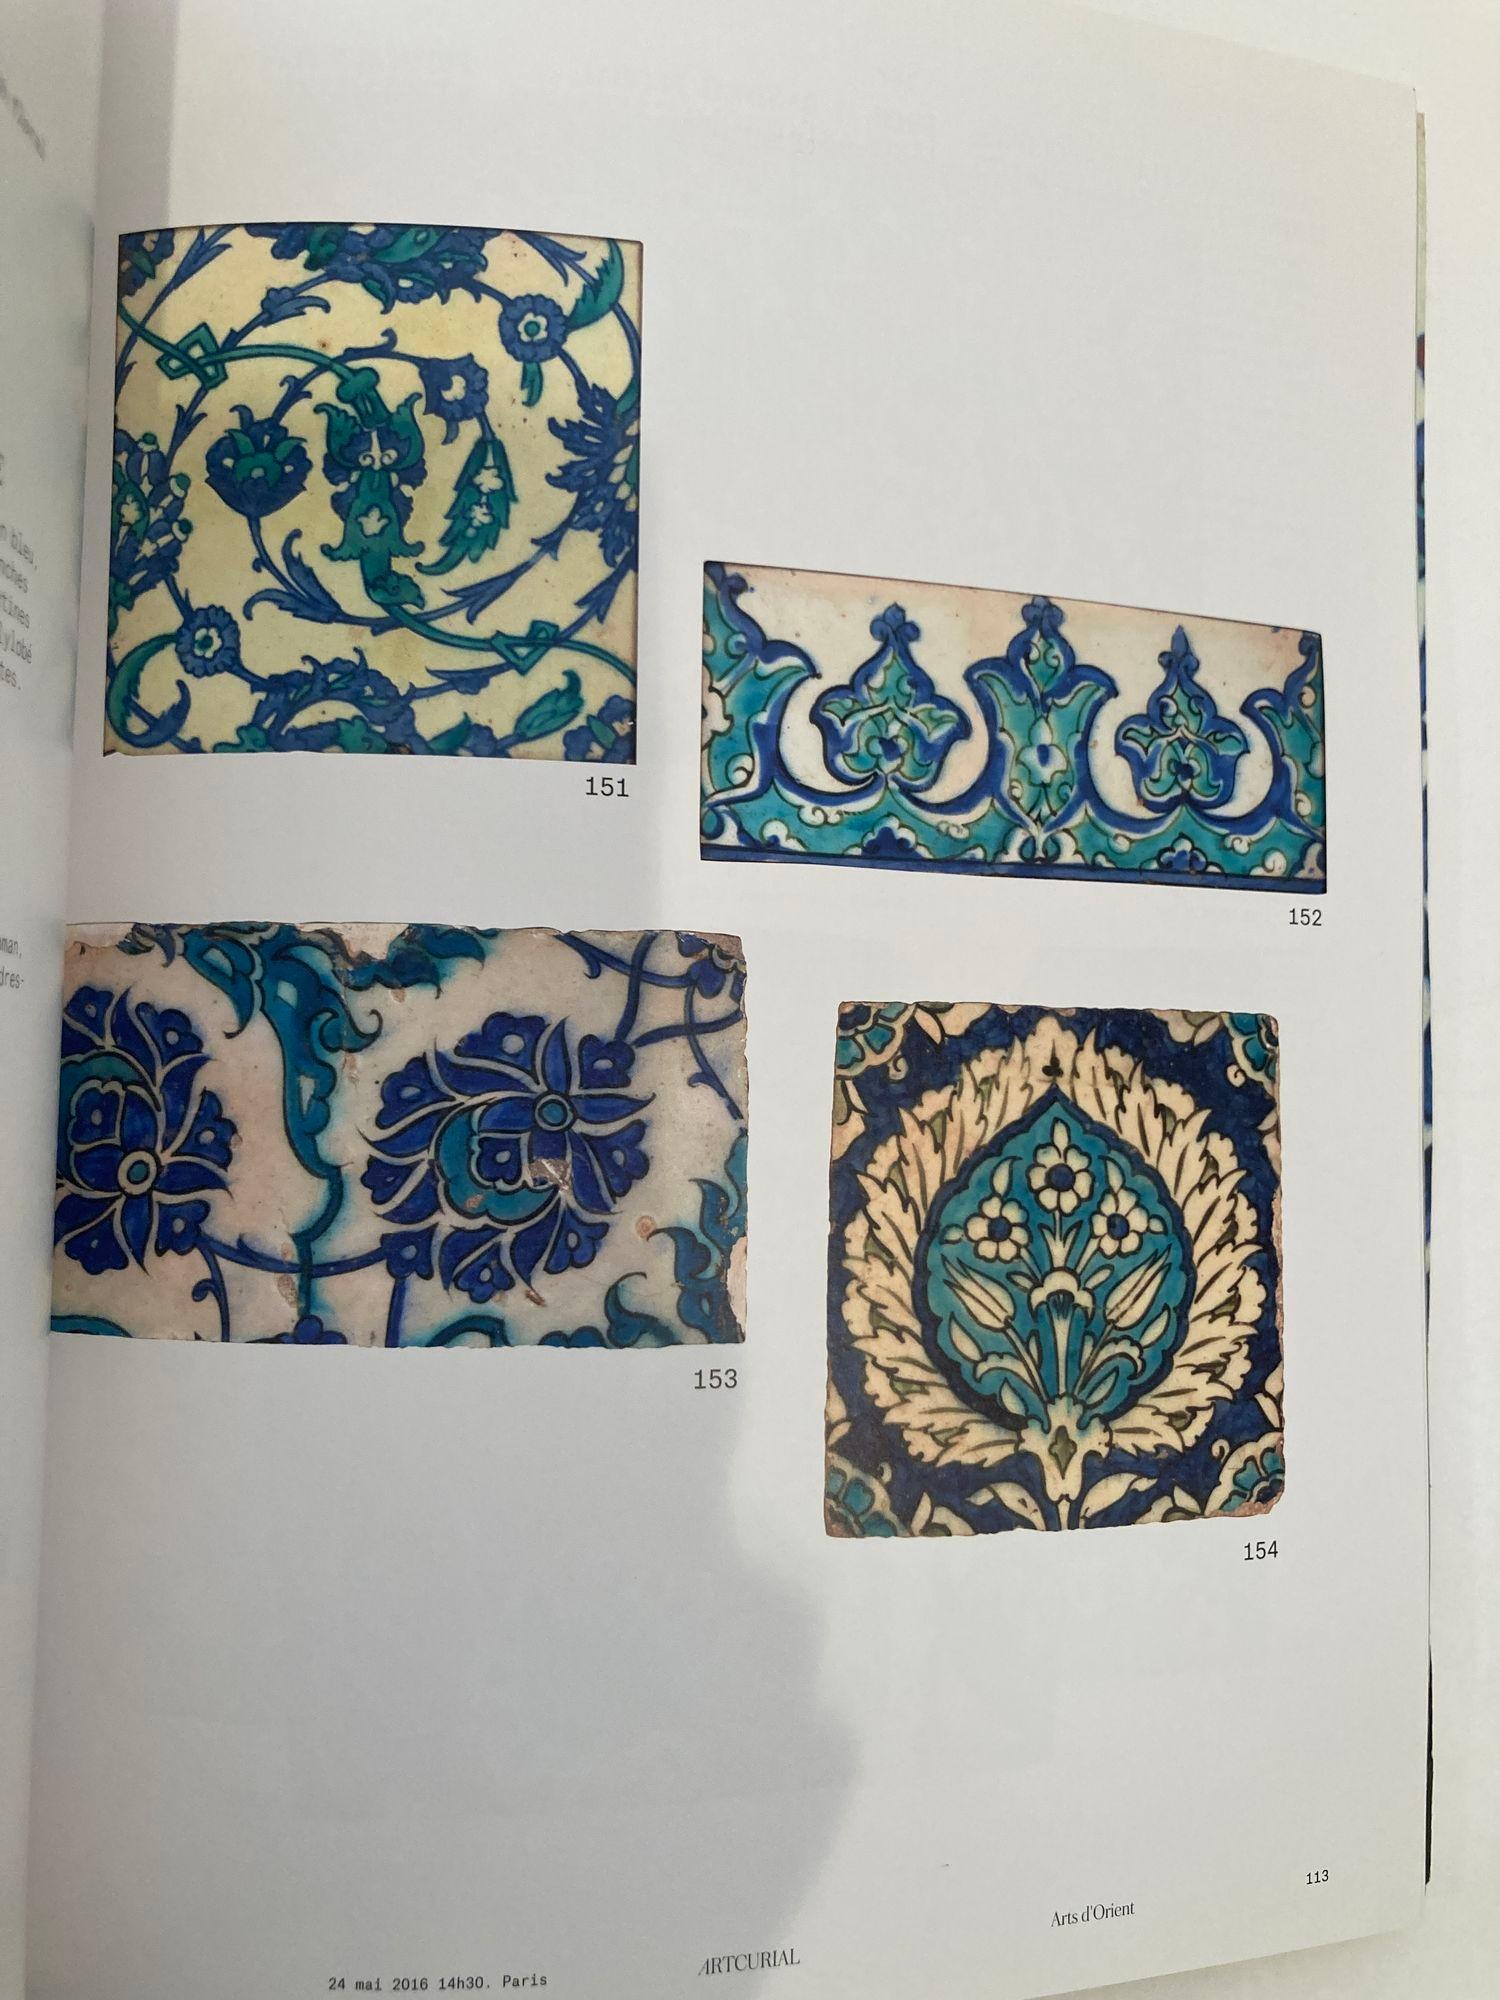 Arts D'orient May 24 2016 Artcurial Auction Catalog, Paris Oriental Art Book For Sale 1